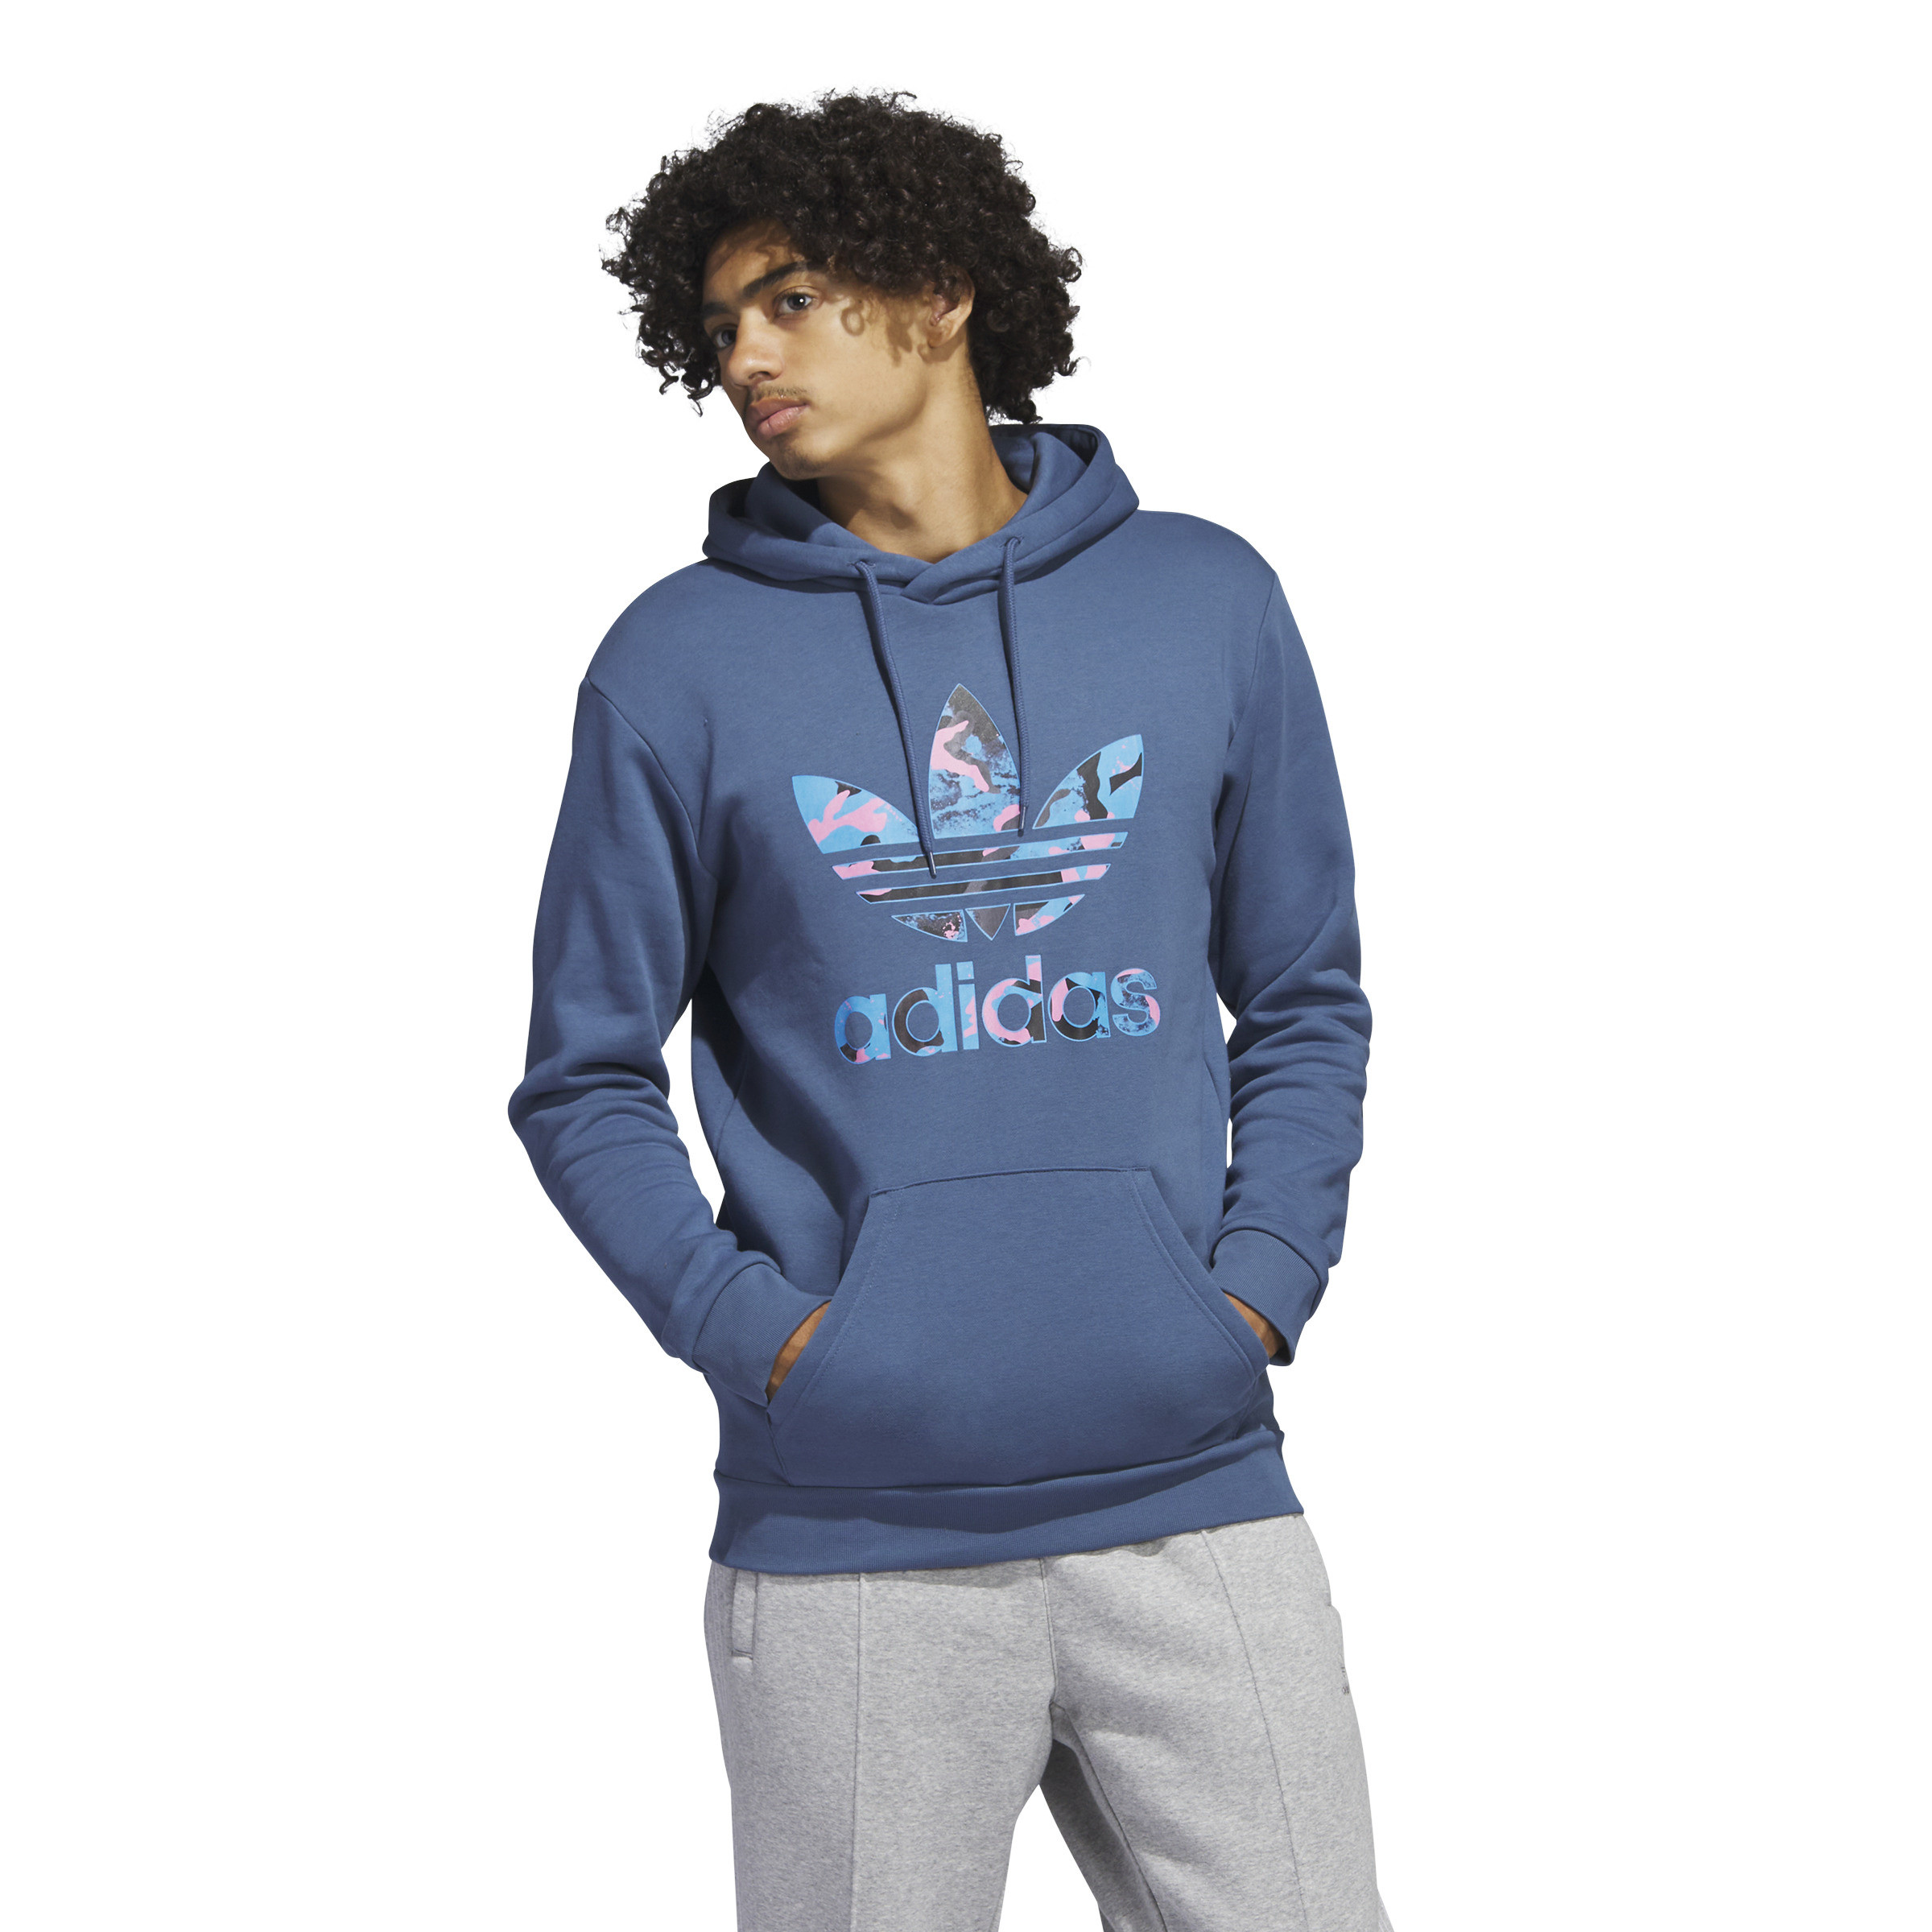 Adidas - Hooded sweatshirt with logo, Aviation Blue, large image number 4